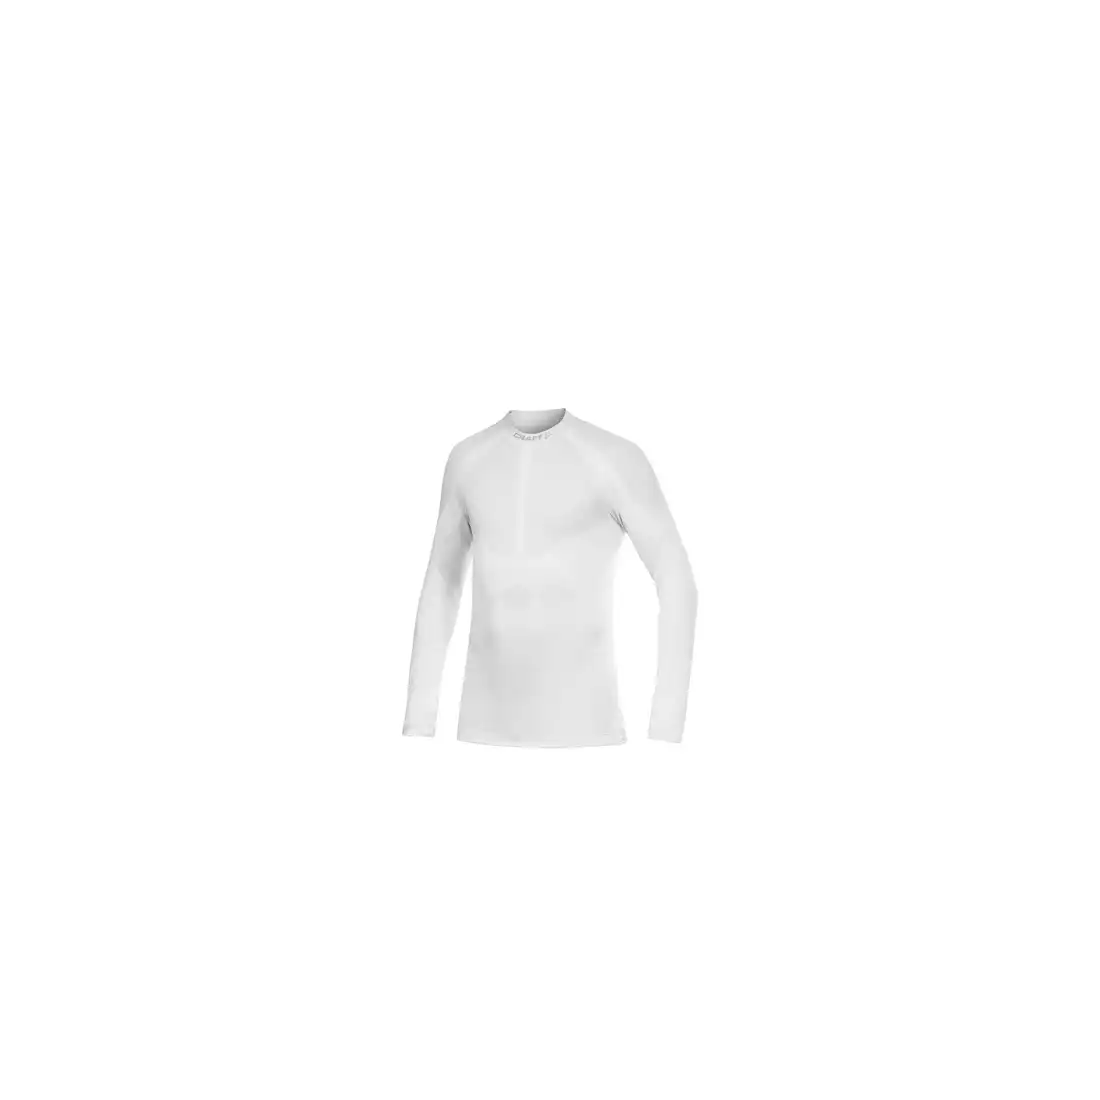 CRAFT WARM - bielizna termoaktywna - 1901637-2900 - męska koszulka